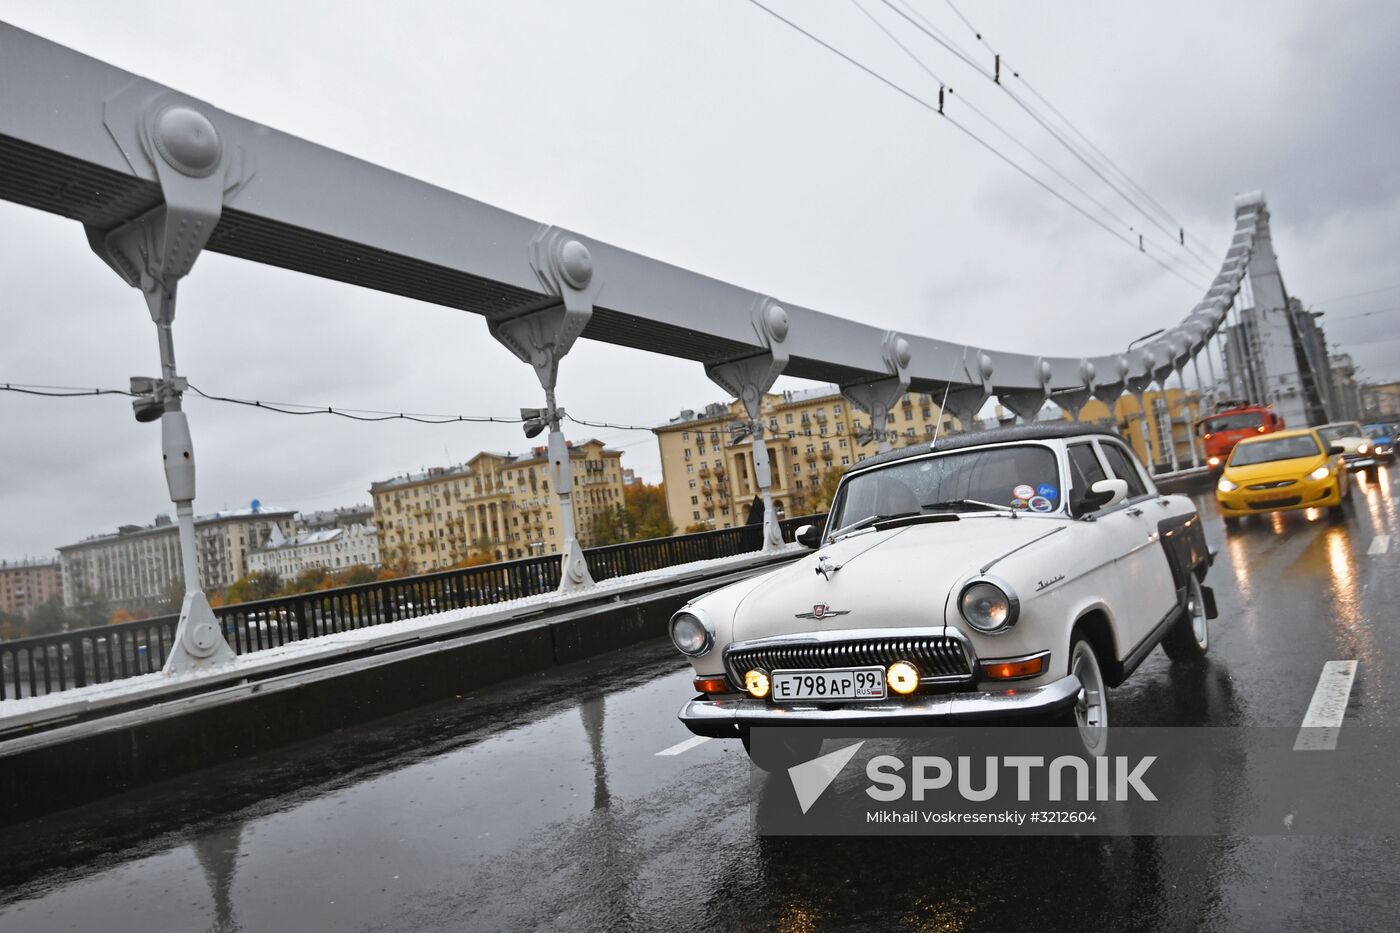 Display of vintage Volga cars